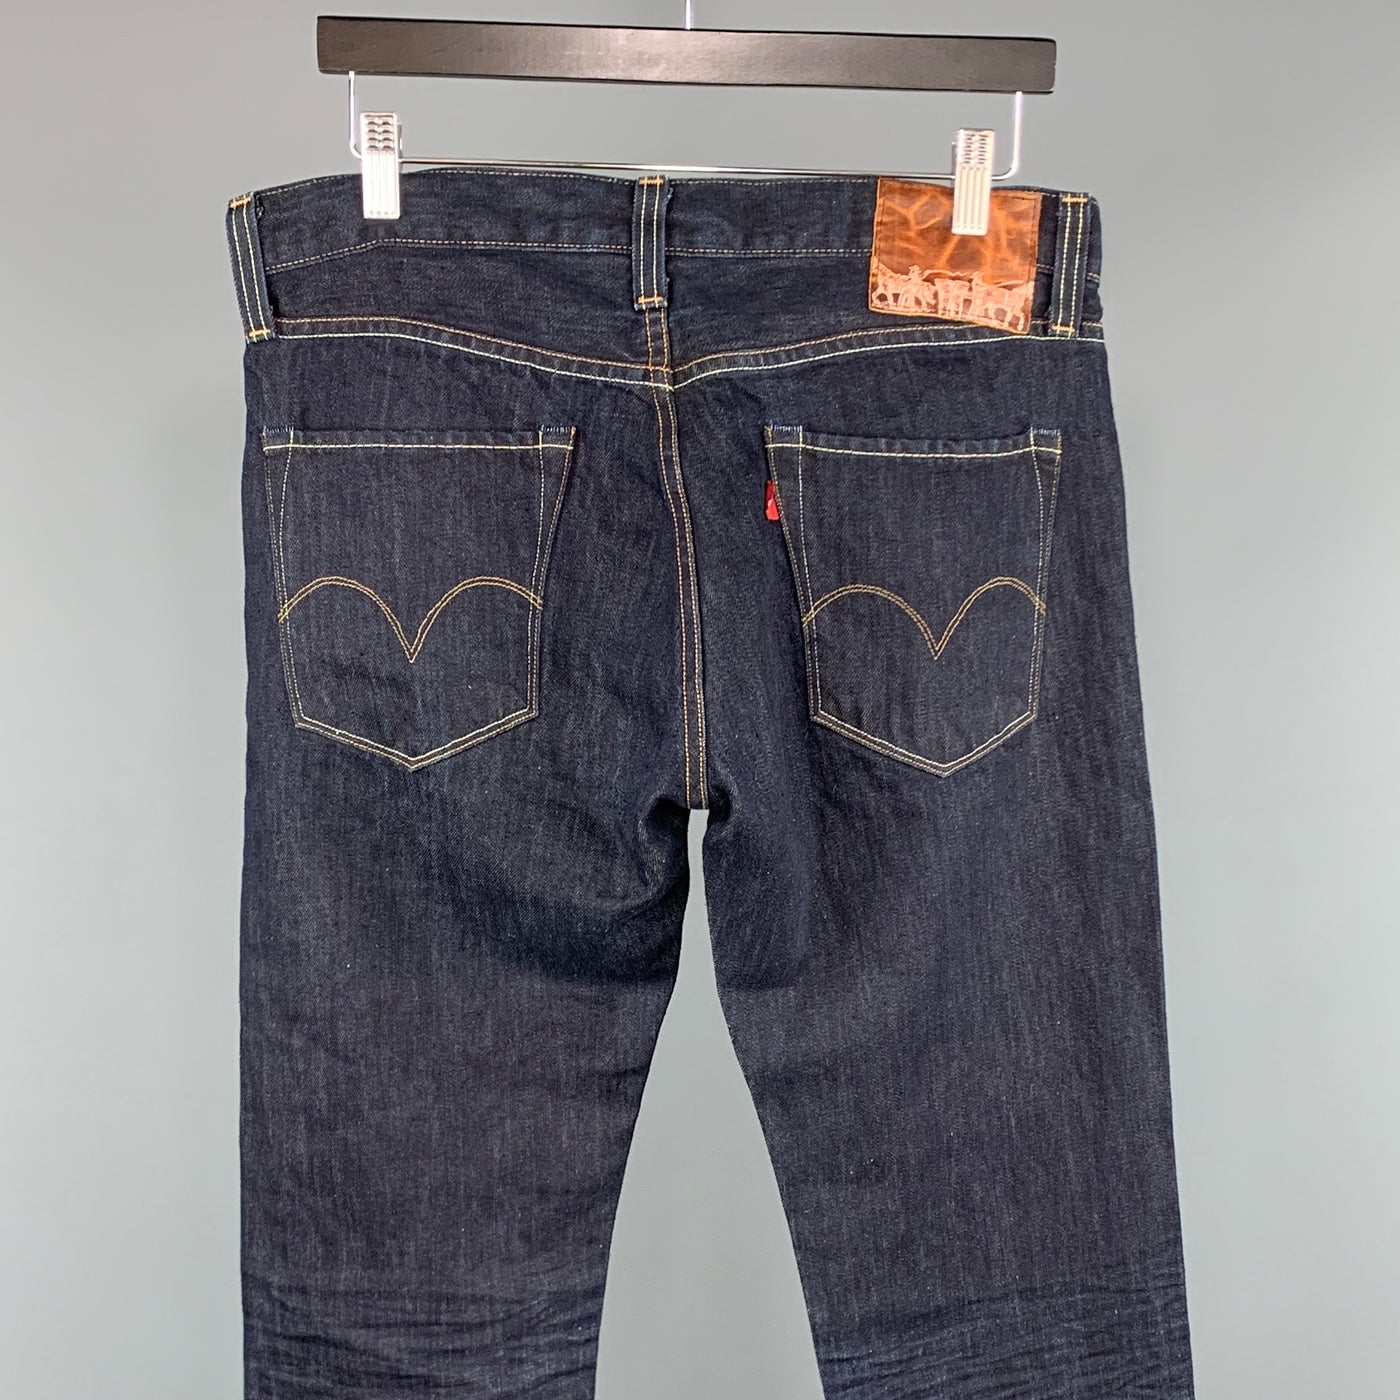 LEVI'S Size 32 x 36 Indigo Solid Cotton / Linen Jeans